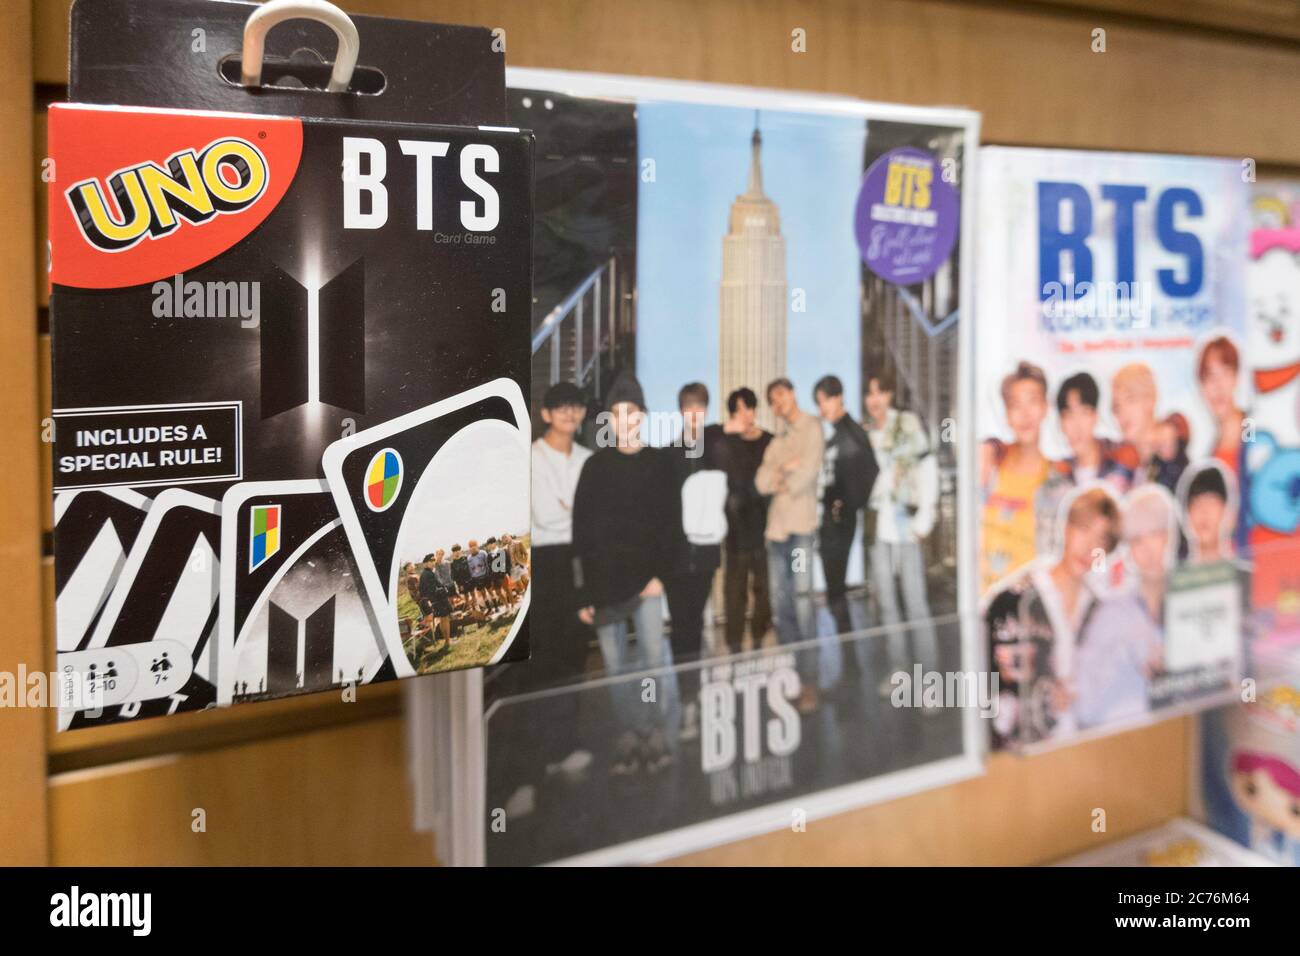 Collection K-Pop Korean Boy Band en solde, New York Banque D'Images